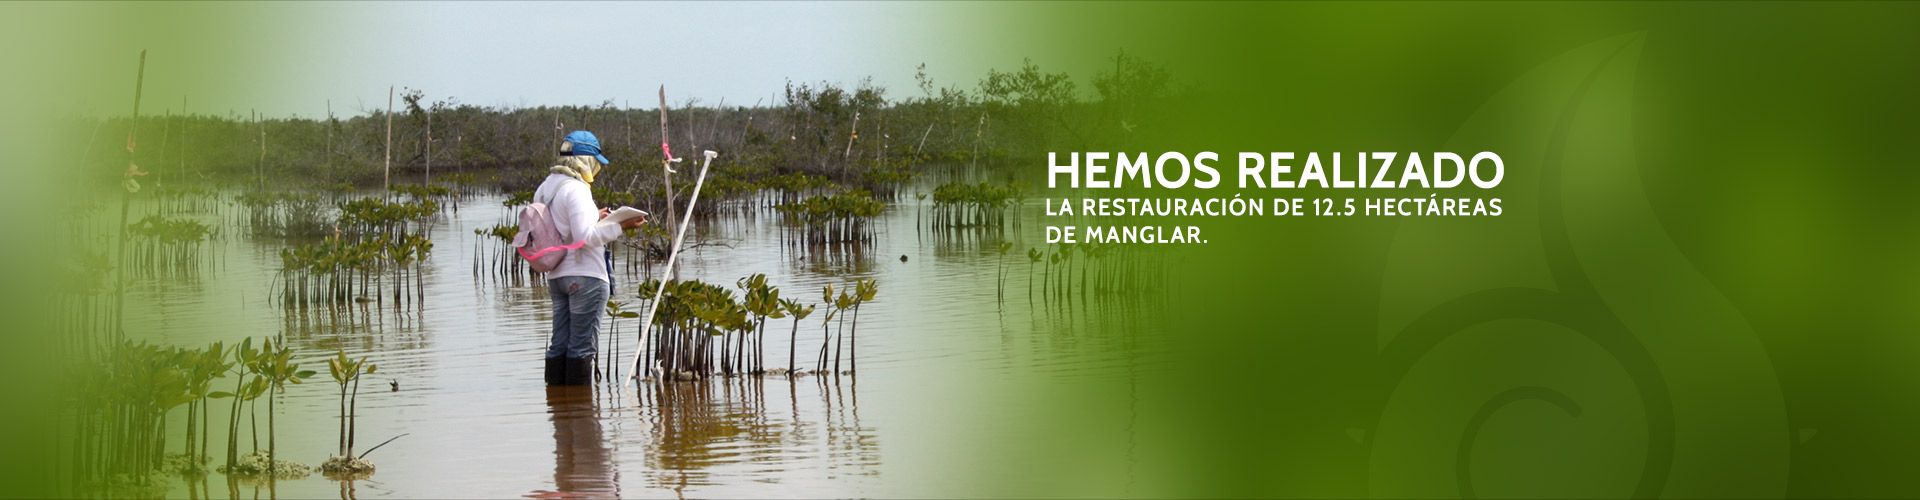 Hemos realizado las restauración de 12.5 Hectáreas de manglar.